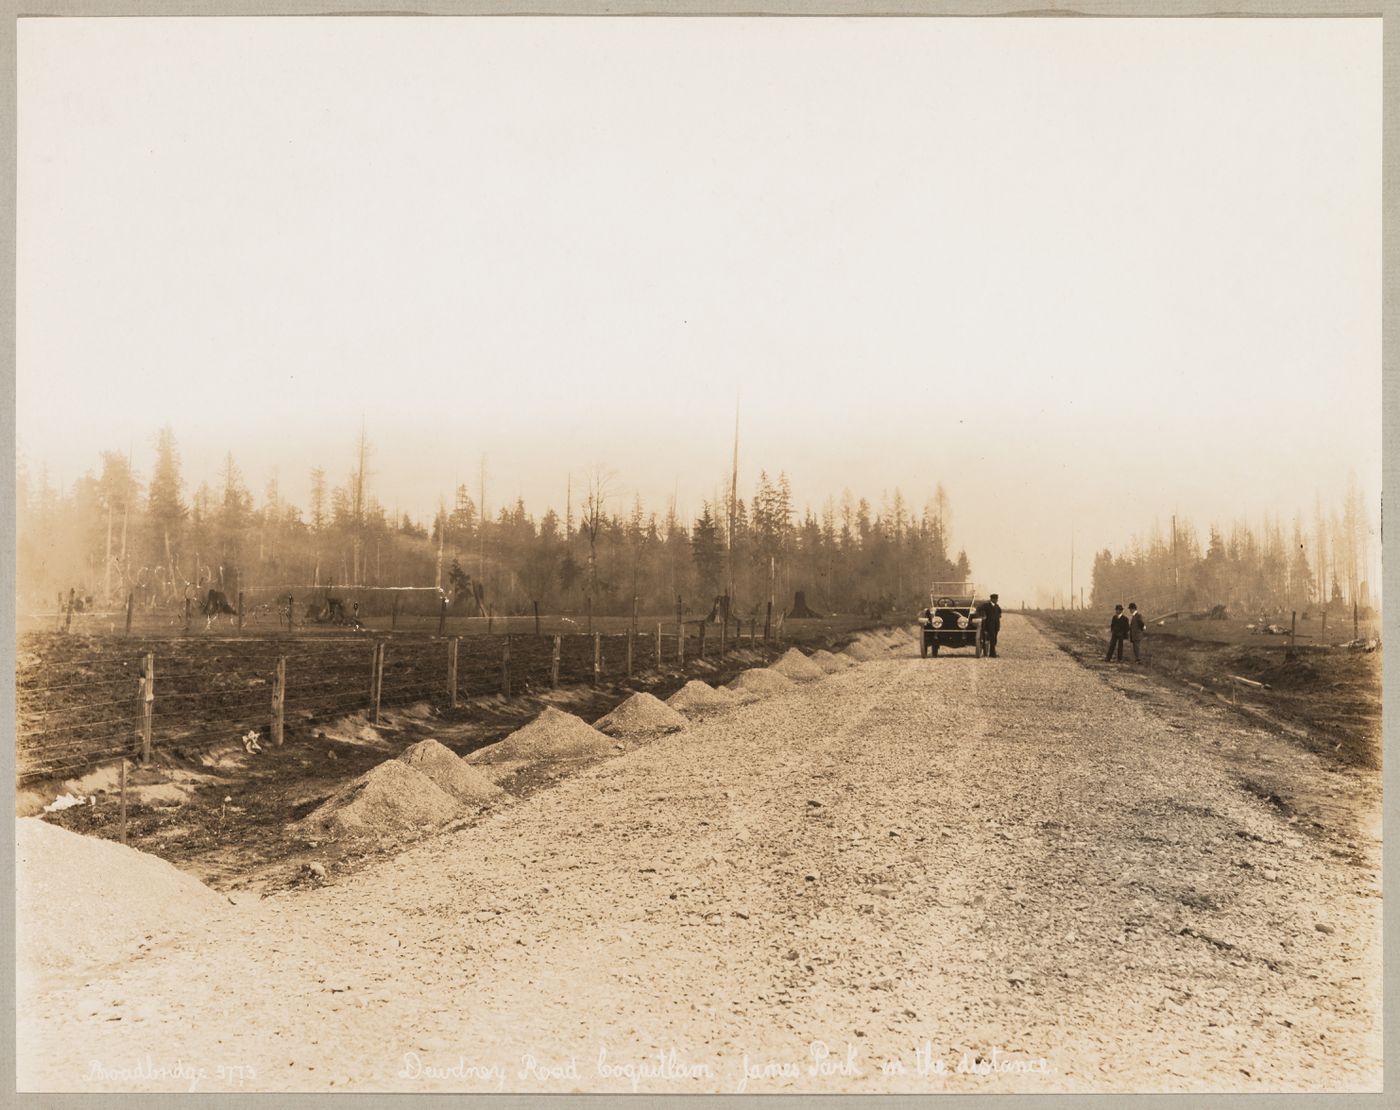 View of Dewdney Trunk Road, Coquitlam (now Port Coquitlam), British Columbia